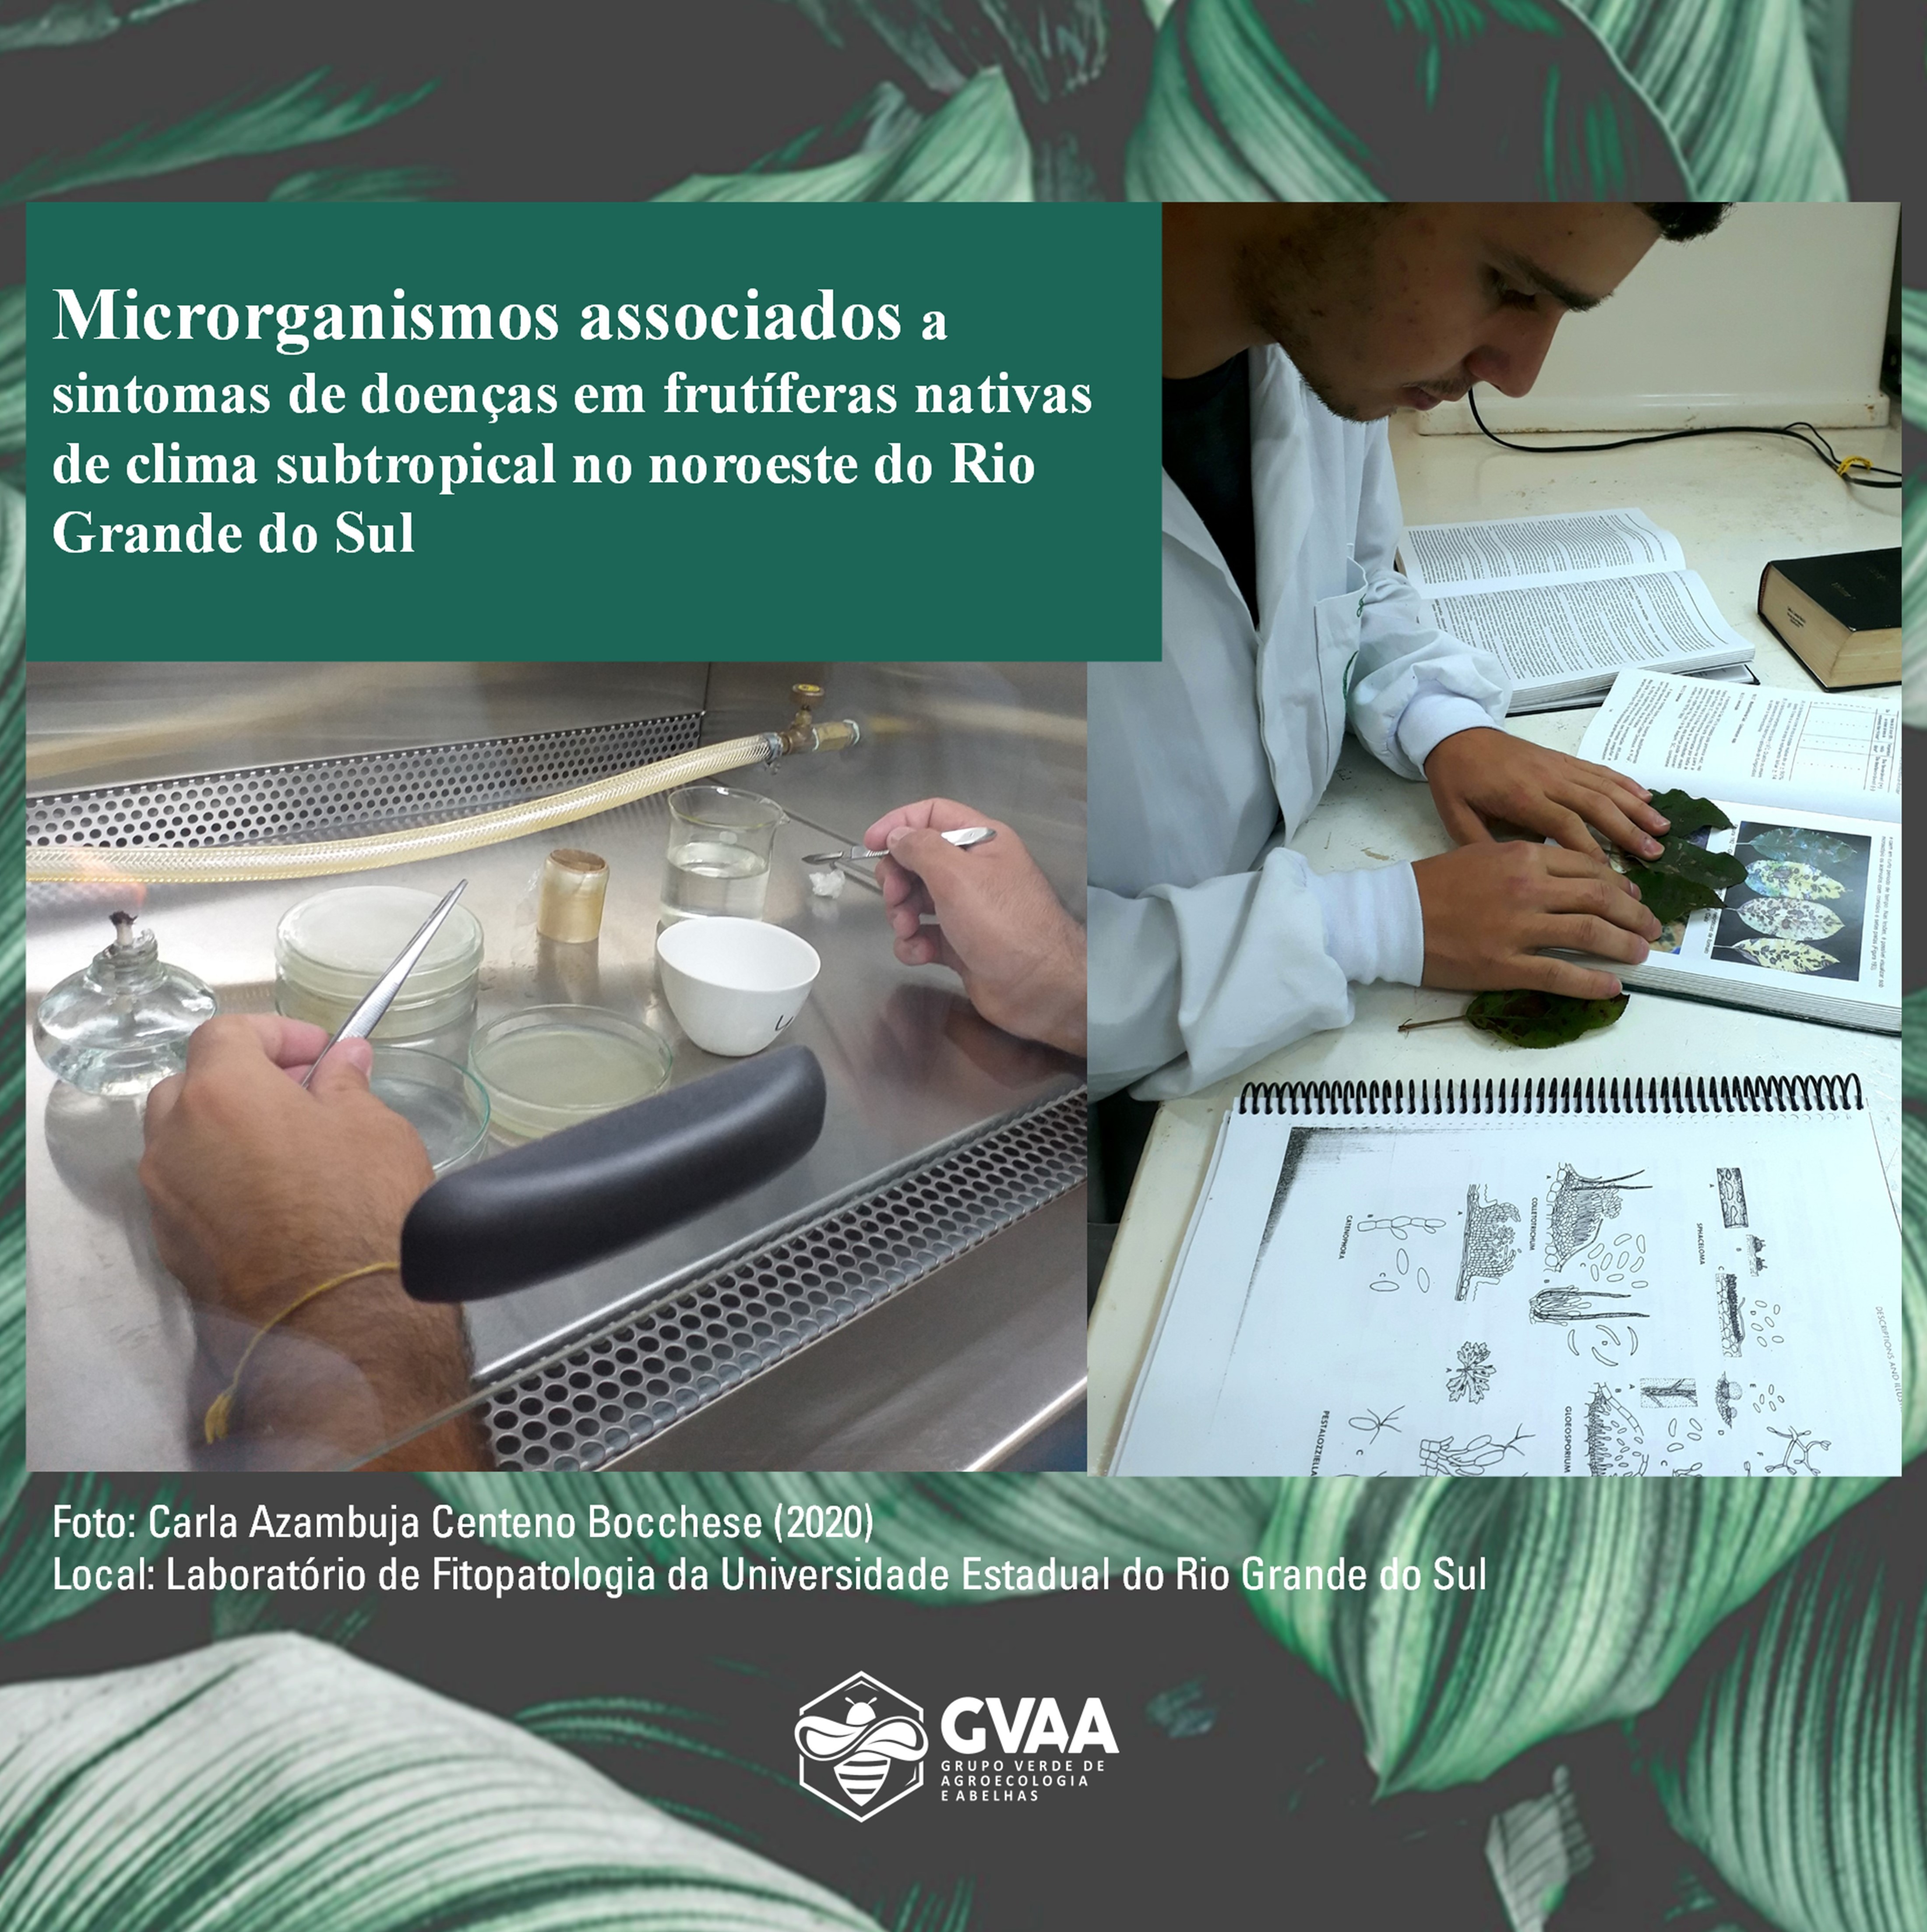 Microrganismos associados a sintomas de doenças em frutíferas nativas de clima subtropical no noroeste do Rio Grande do Sul